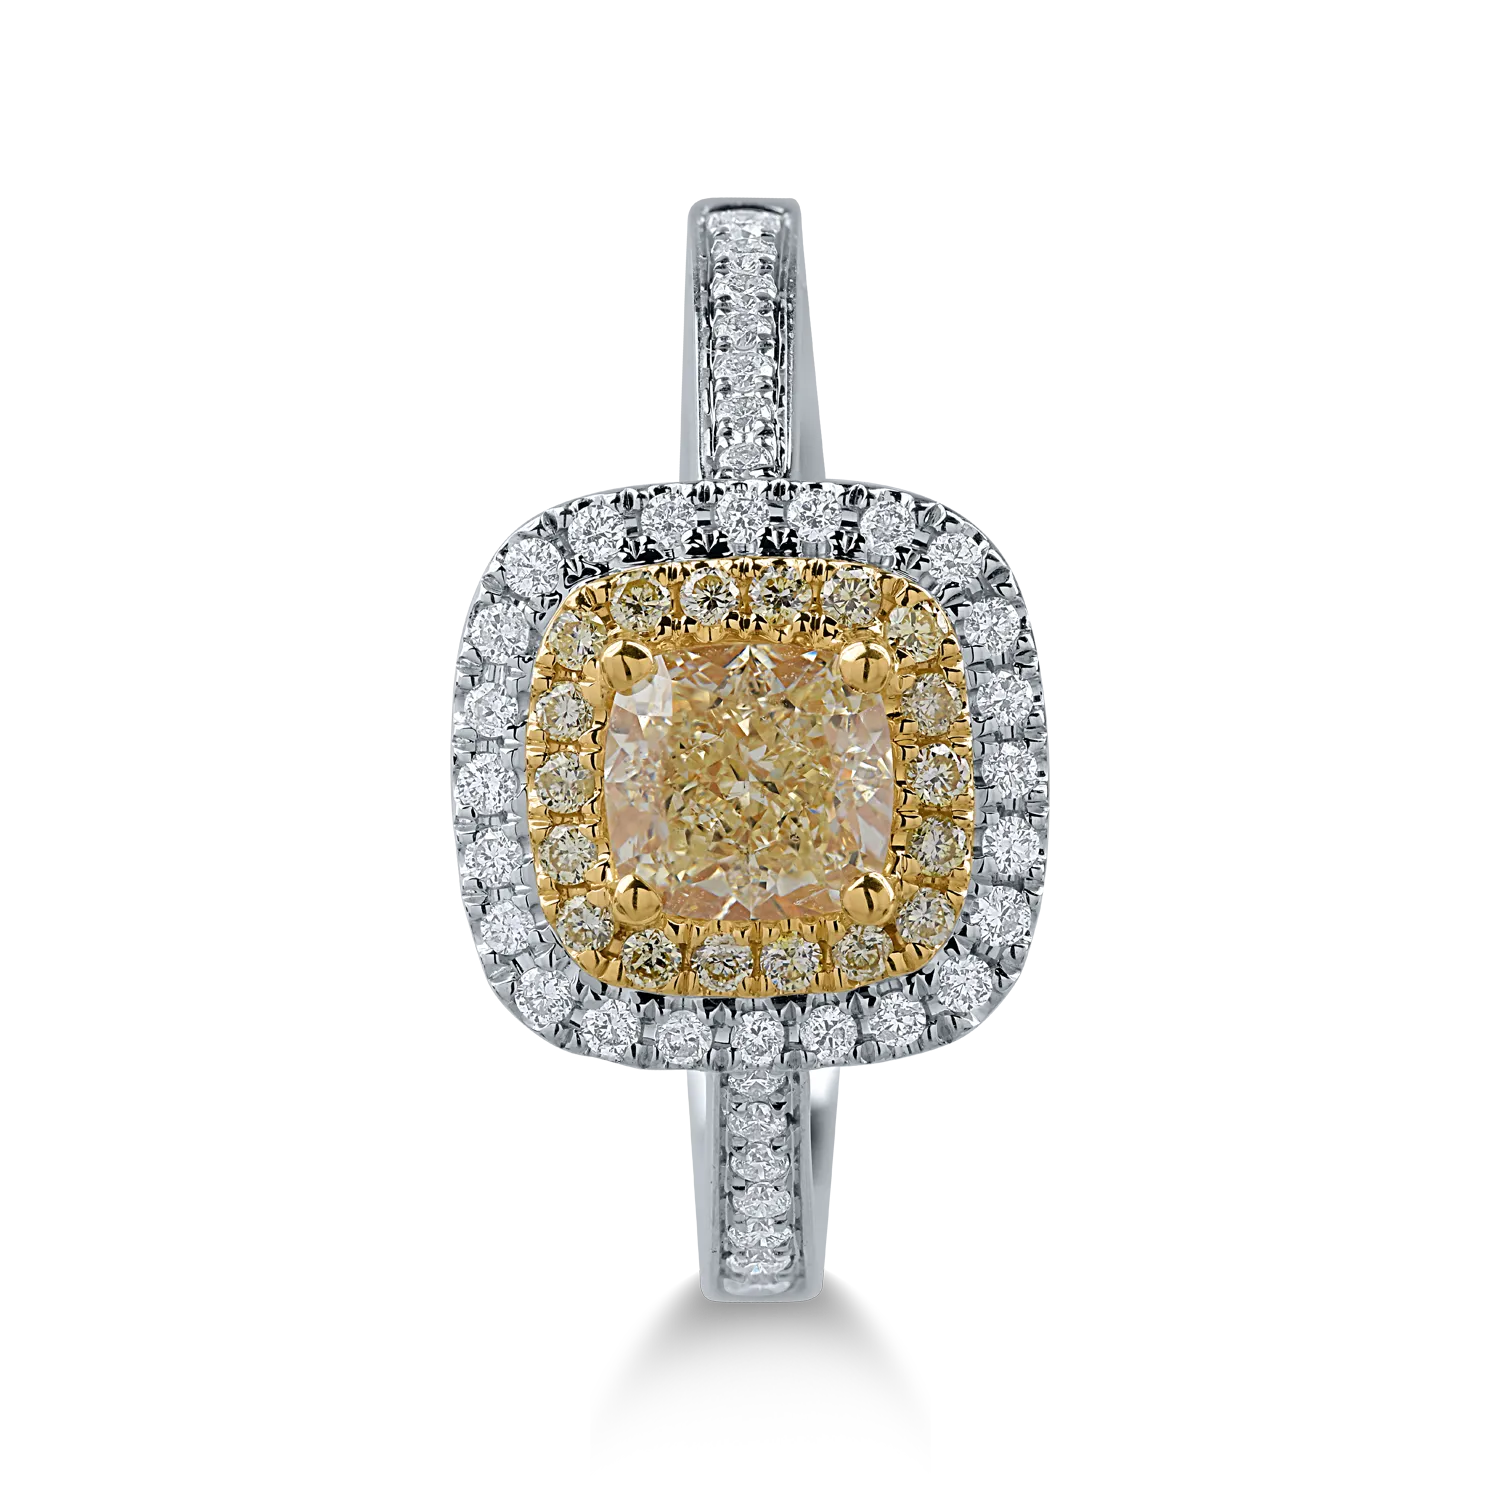 Inel din aur alb-galben cu diamante galbene de 0.96ct si diamante transparente de 0.21ct